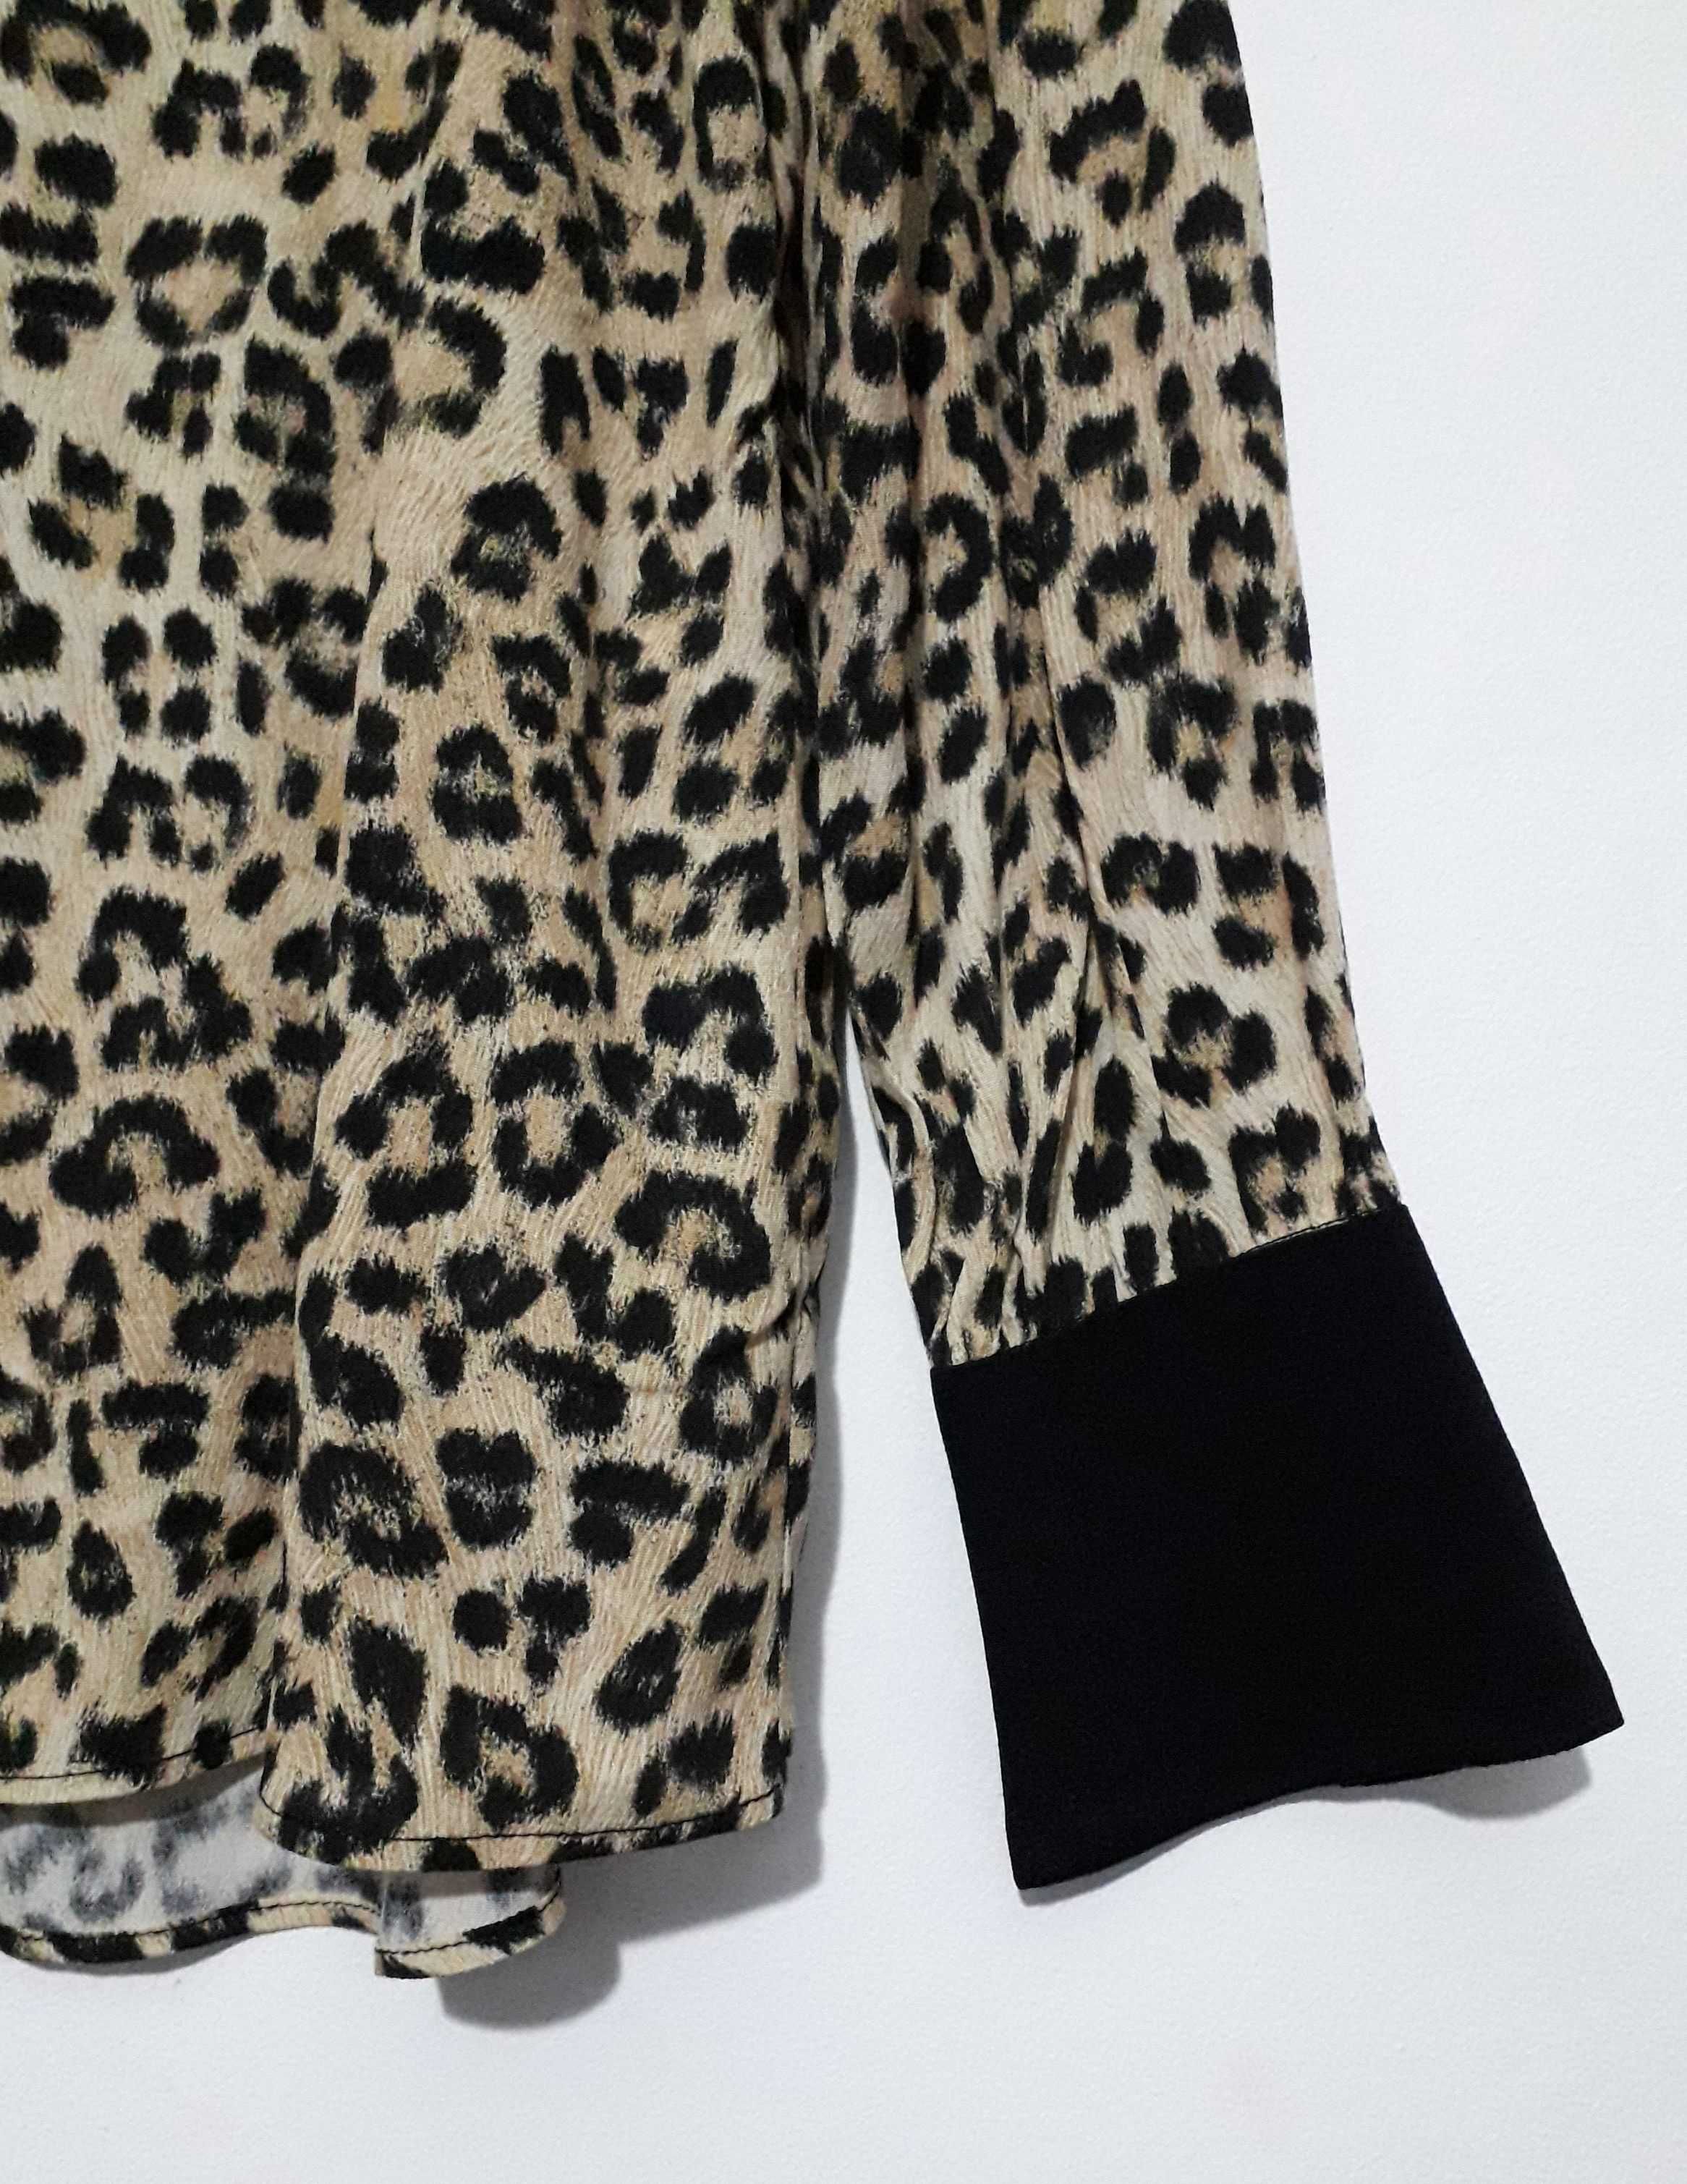 Camisa padrão leopardo com laçada Zara T: S Nova